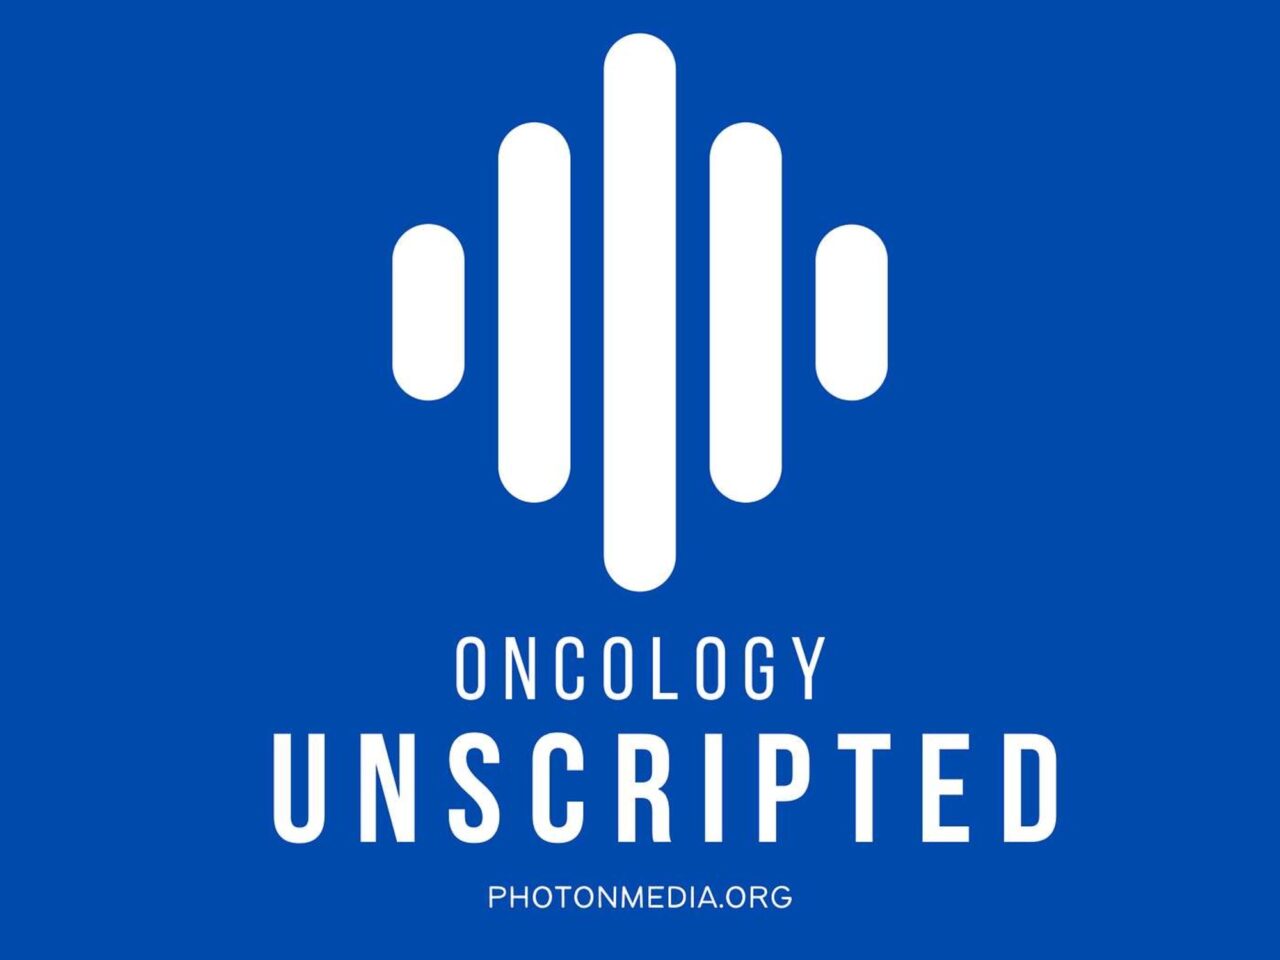 Matt Spraker: Oncology Unscripted has a new episode